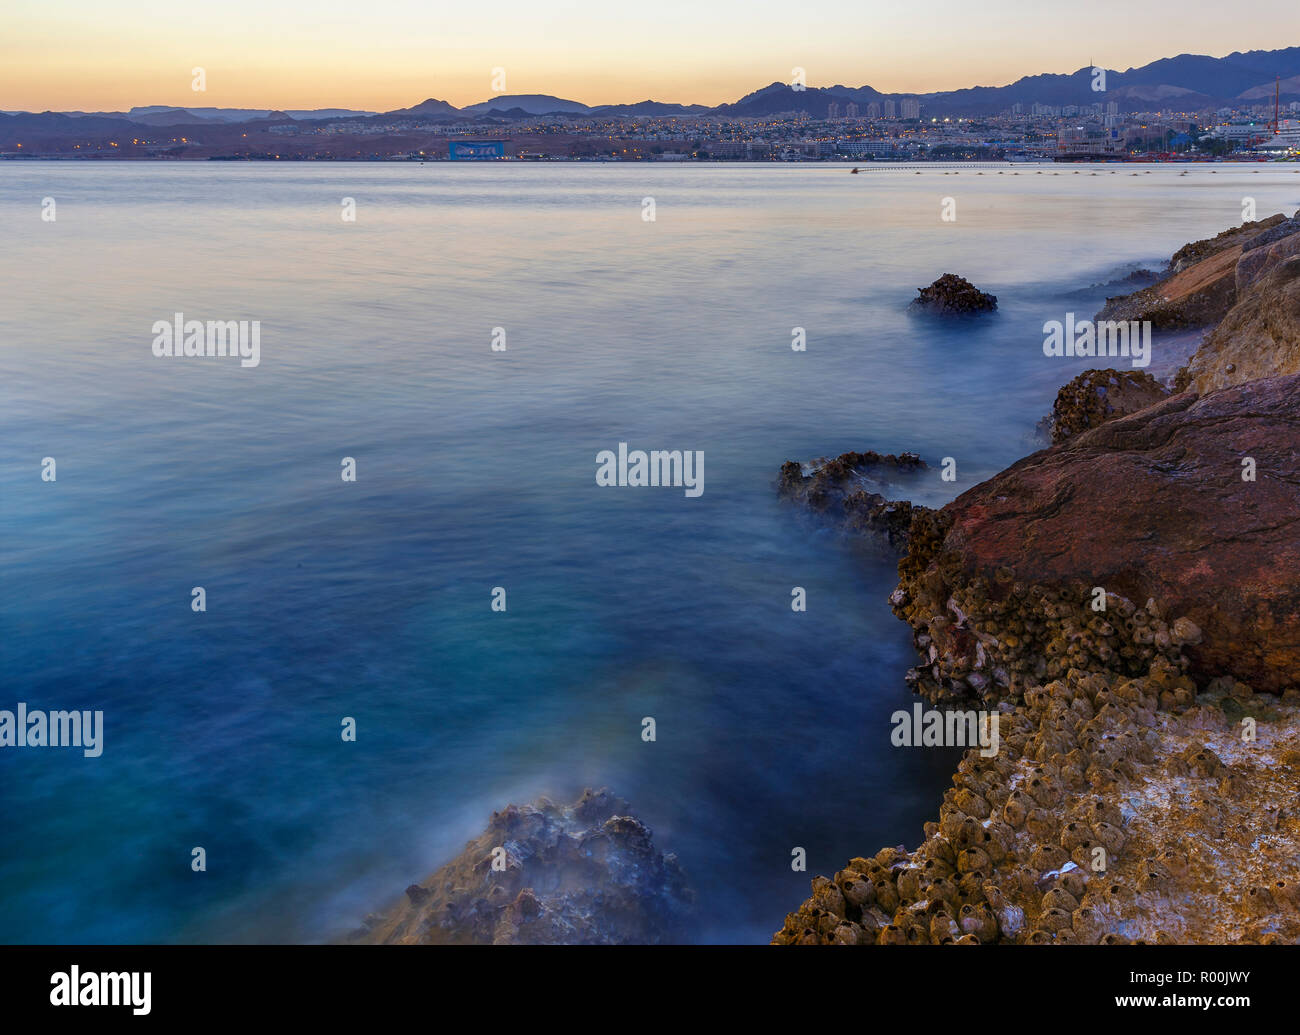 Eilat am Golf von Aqaba am Roten Meer Stockfotografie - Alamy